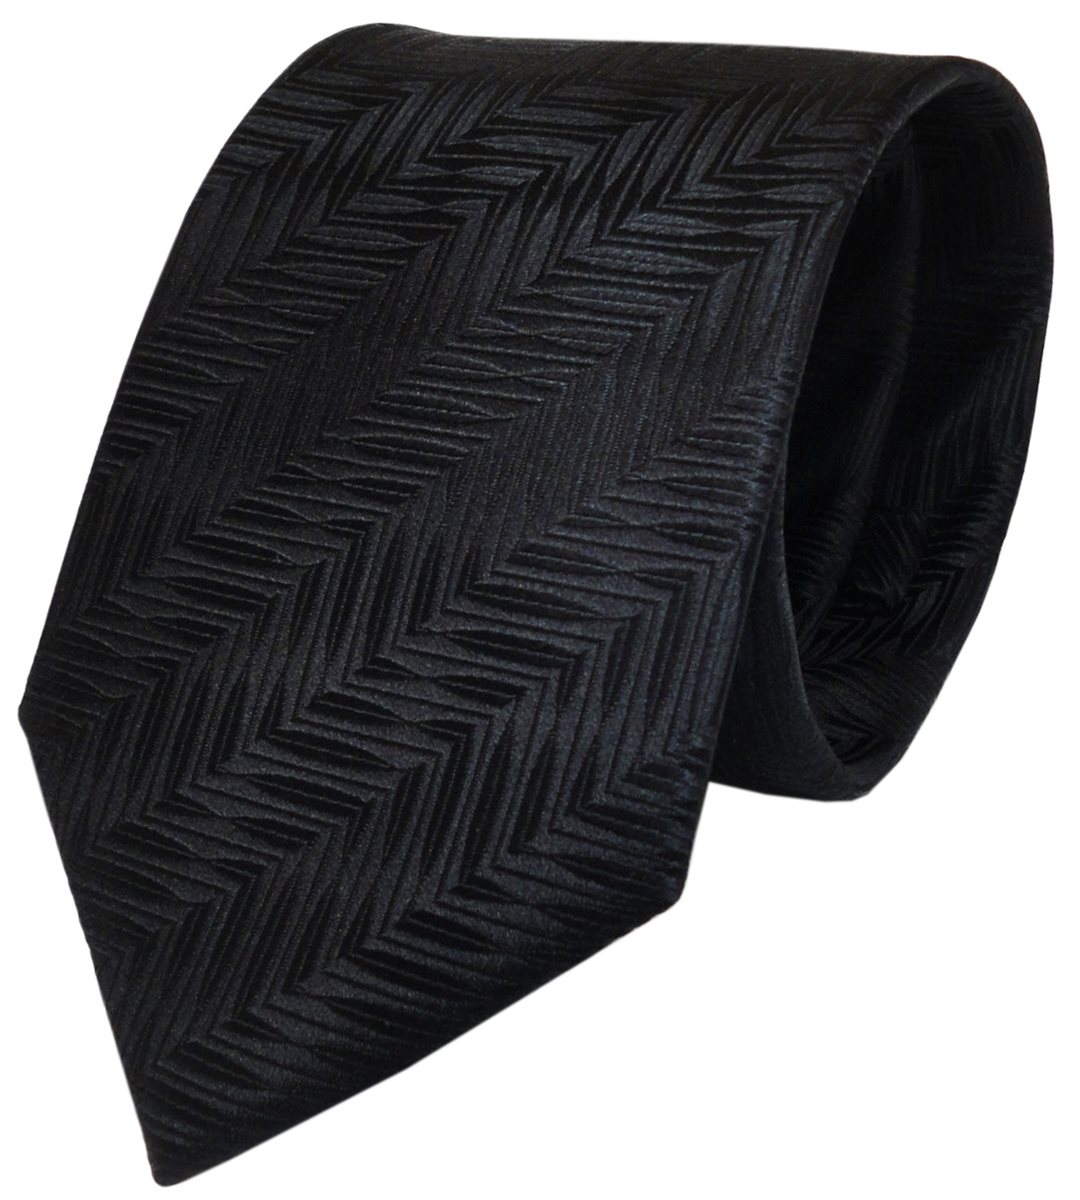 Designer Krawatte schwarz mit Muster pure Seide / Silk - TigerTie